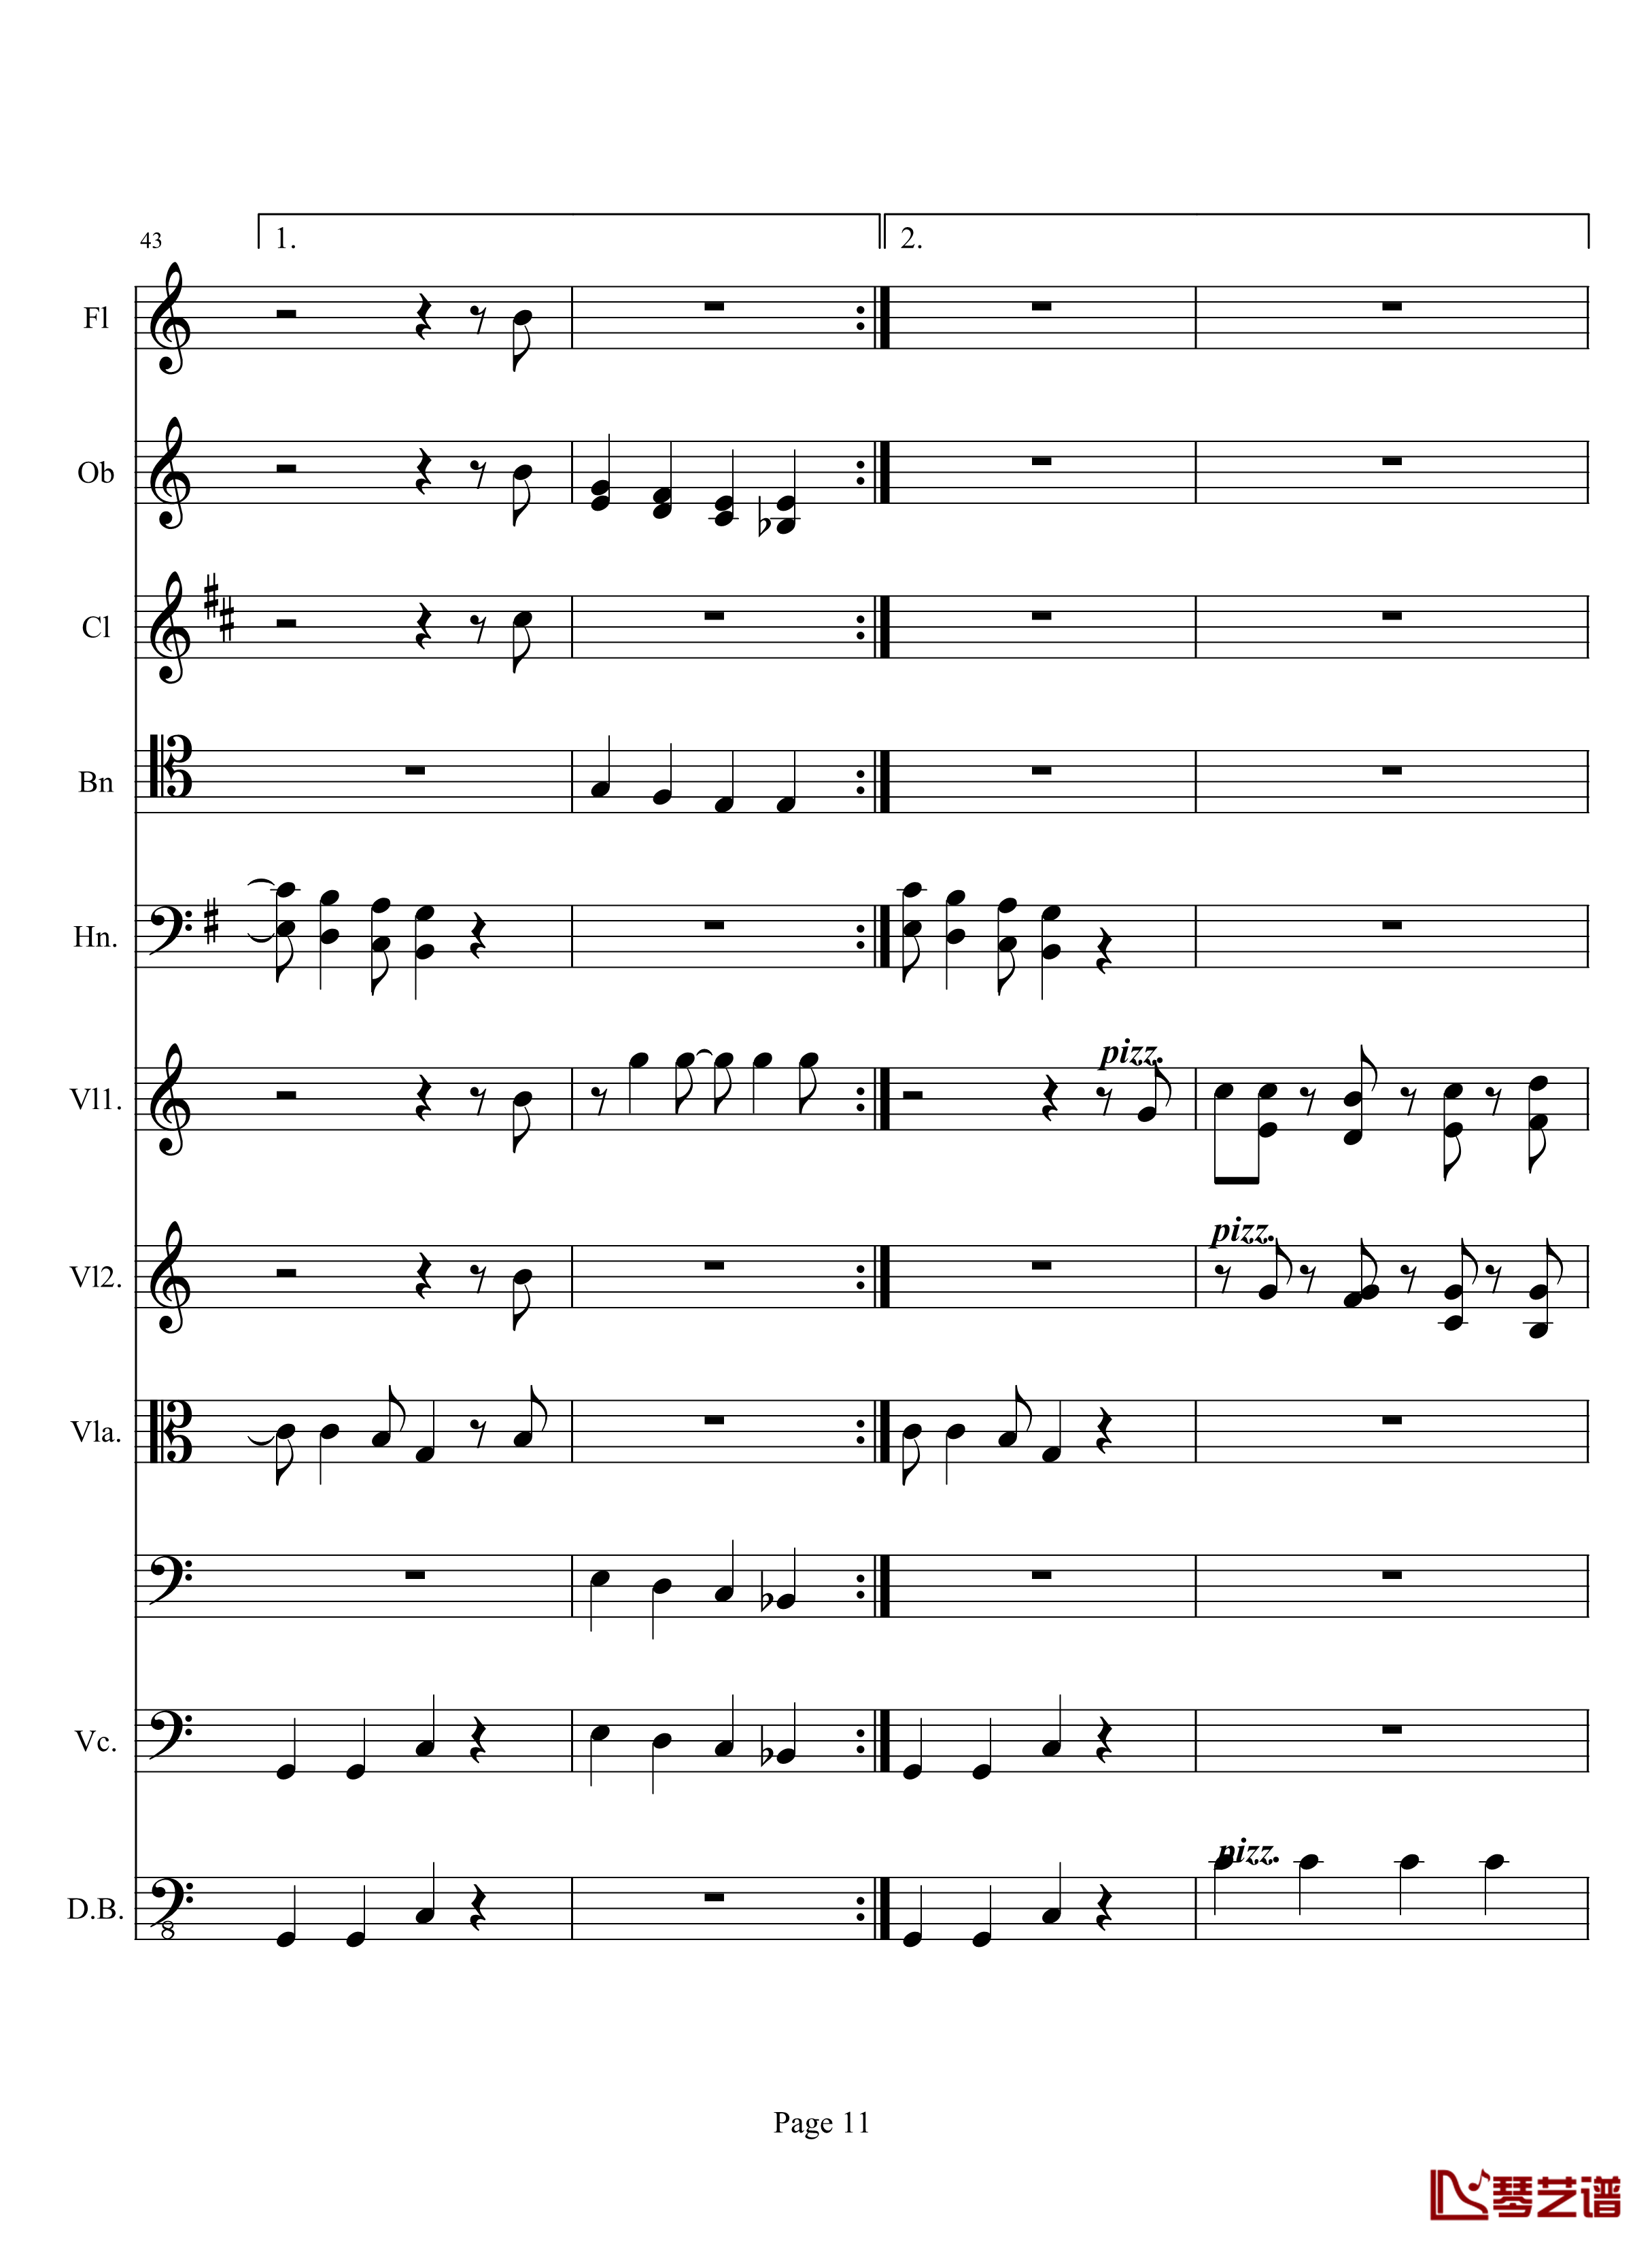 奏鸣曲之交响钢琴谱-第10首-2-贝多芬-beethoven11